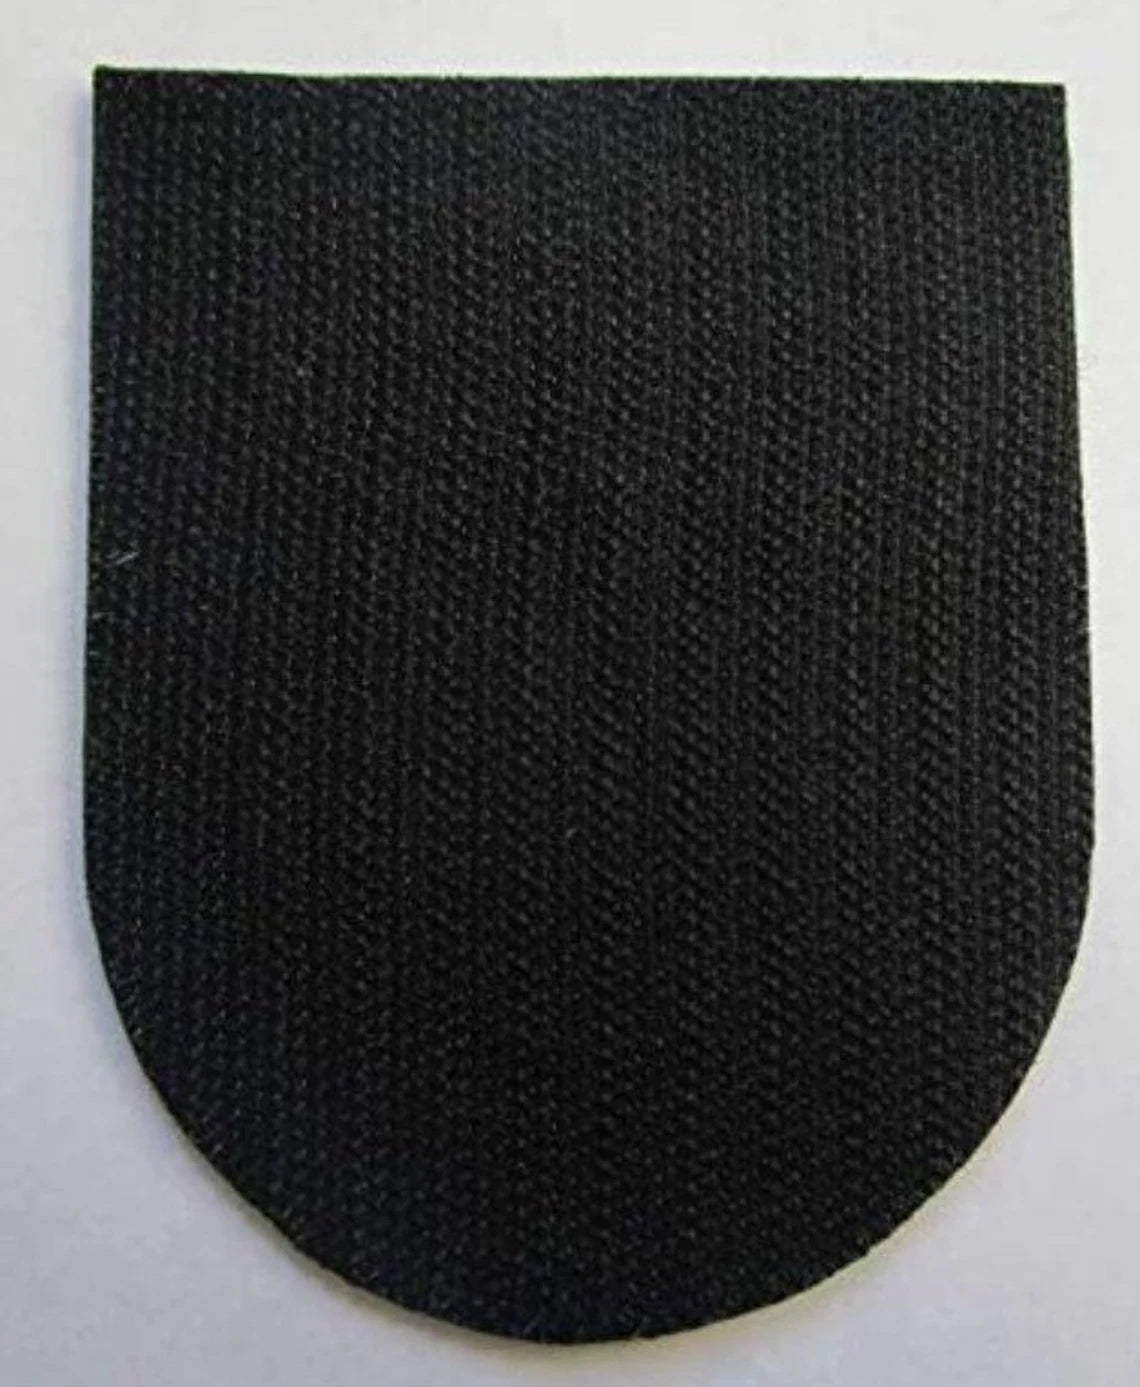 Polizei Deutschland Patch (3.65 Inch) Velcro German Police Badge